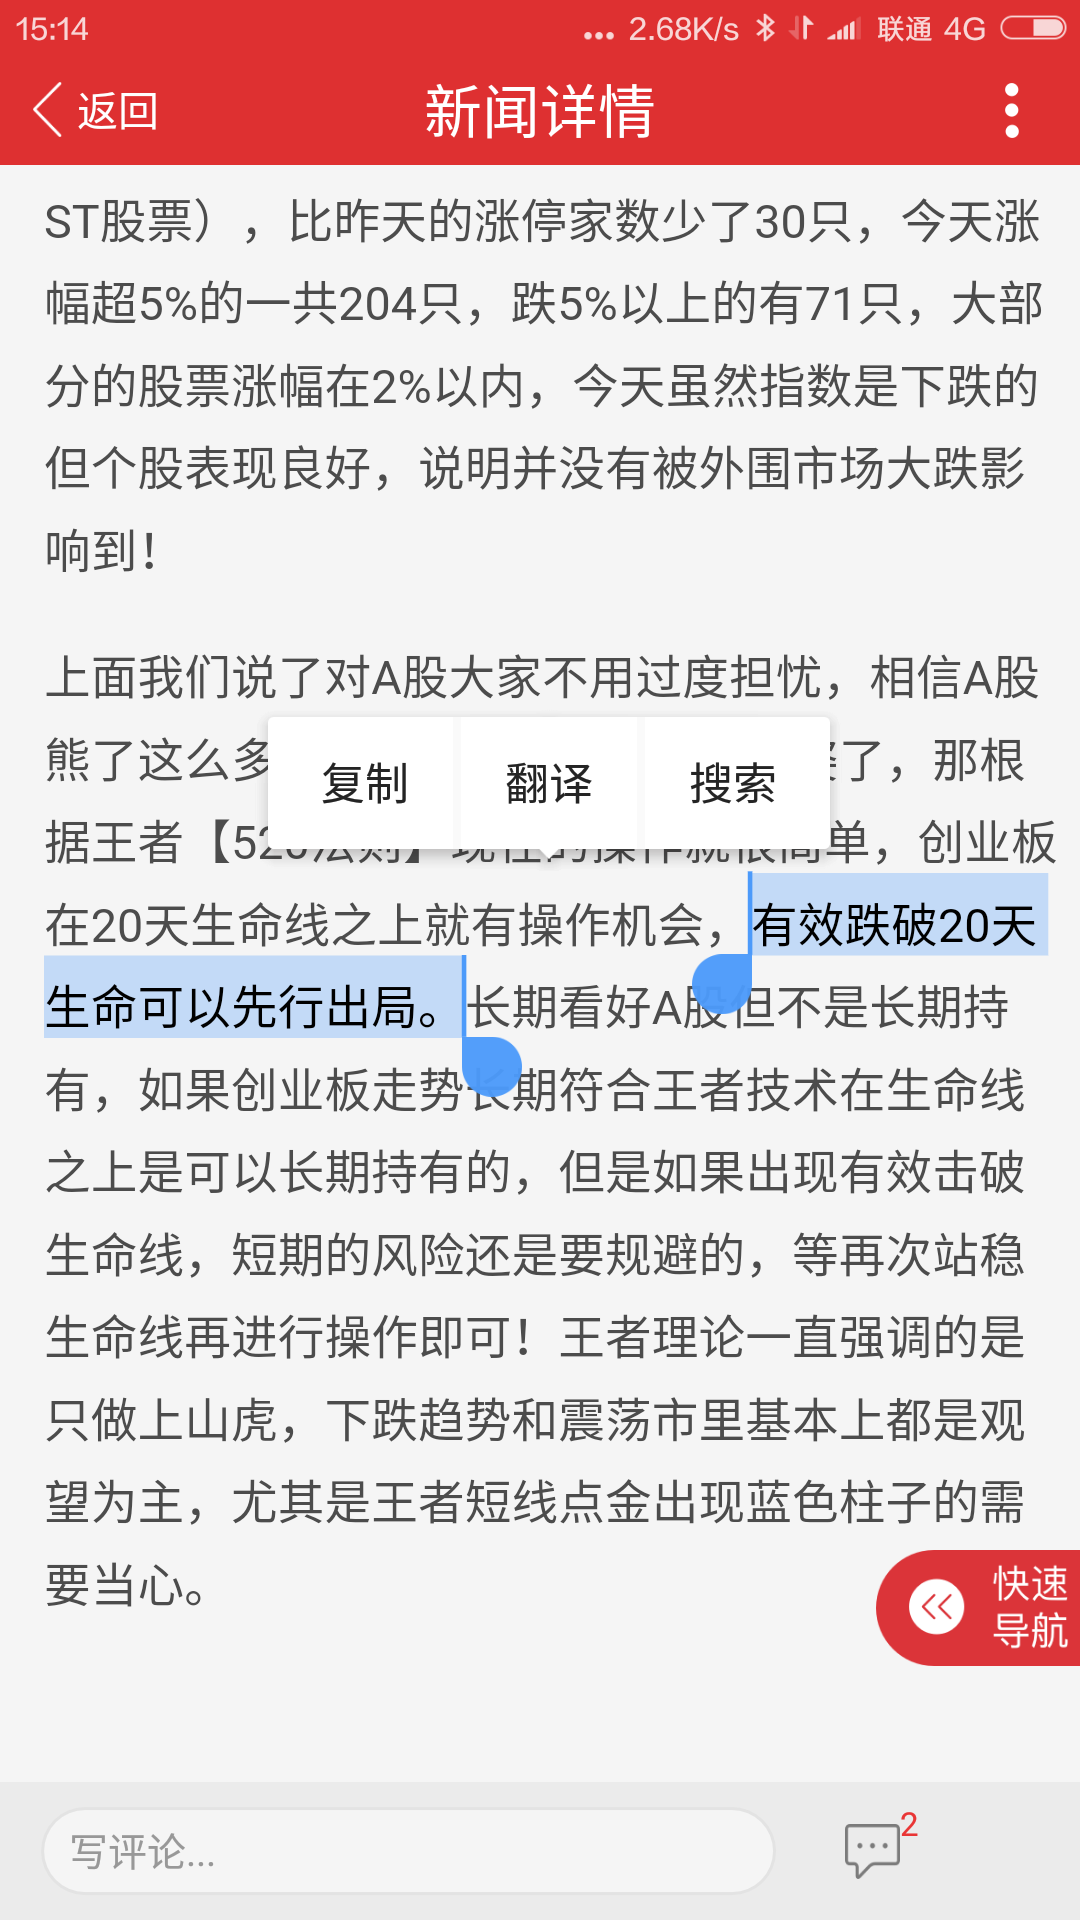 Screenshot_2020-03-04-15-14-23_com.iwangzhe.app.png